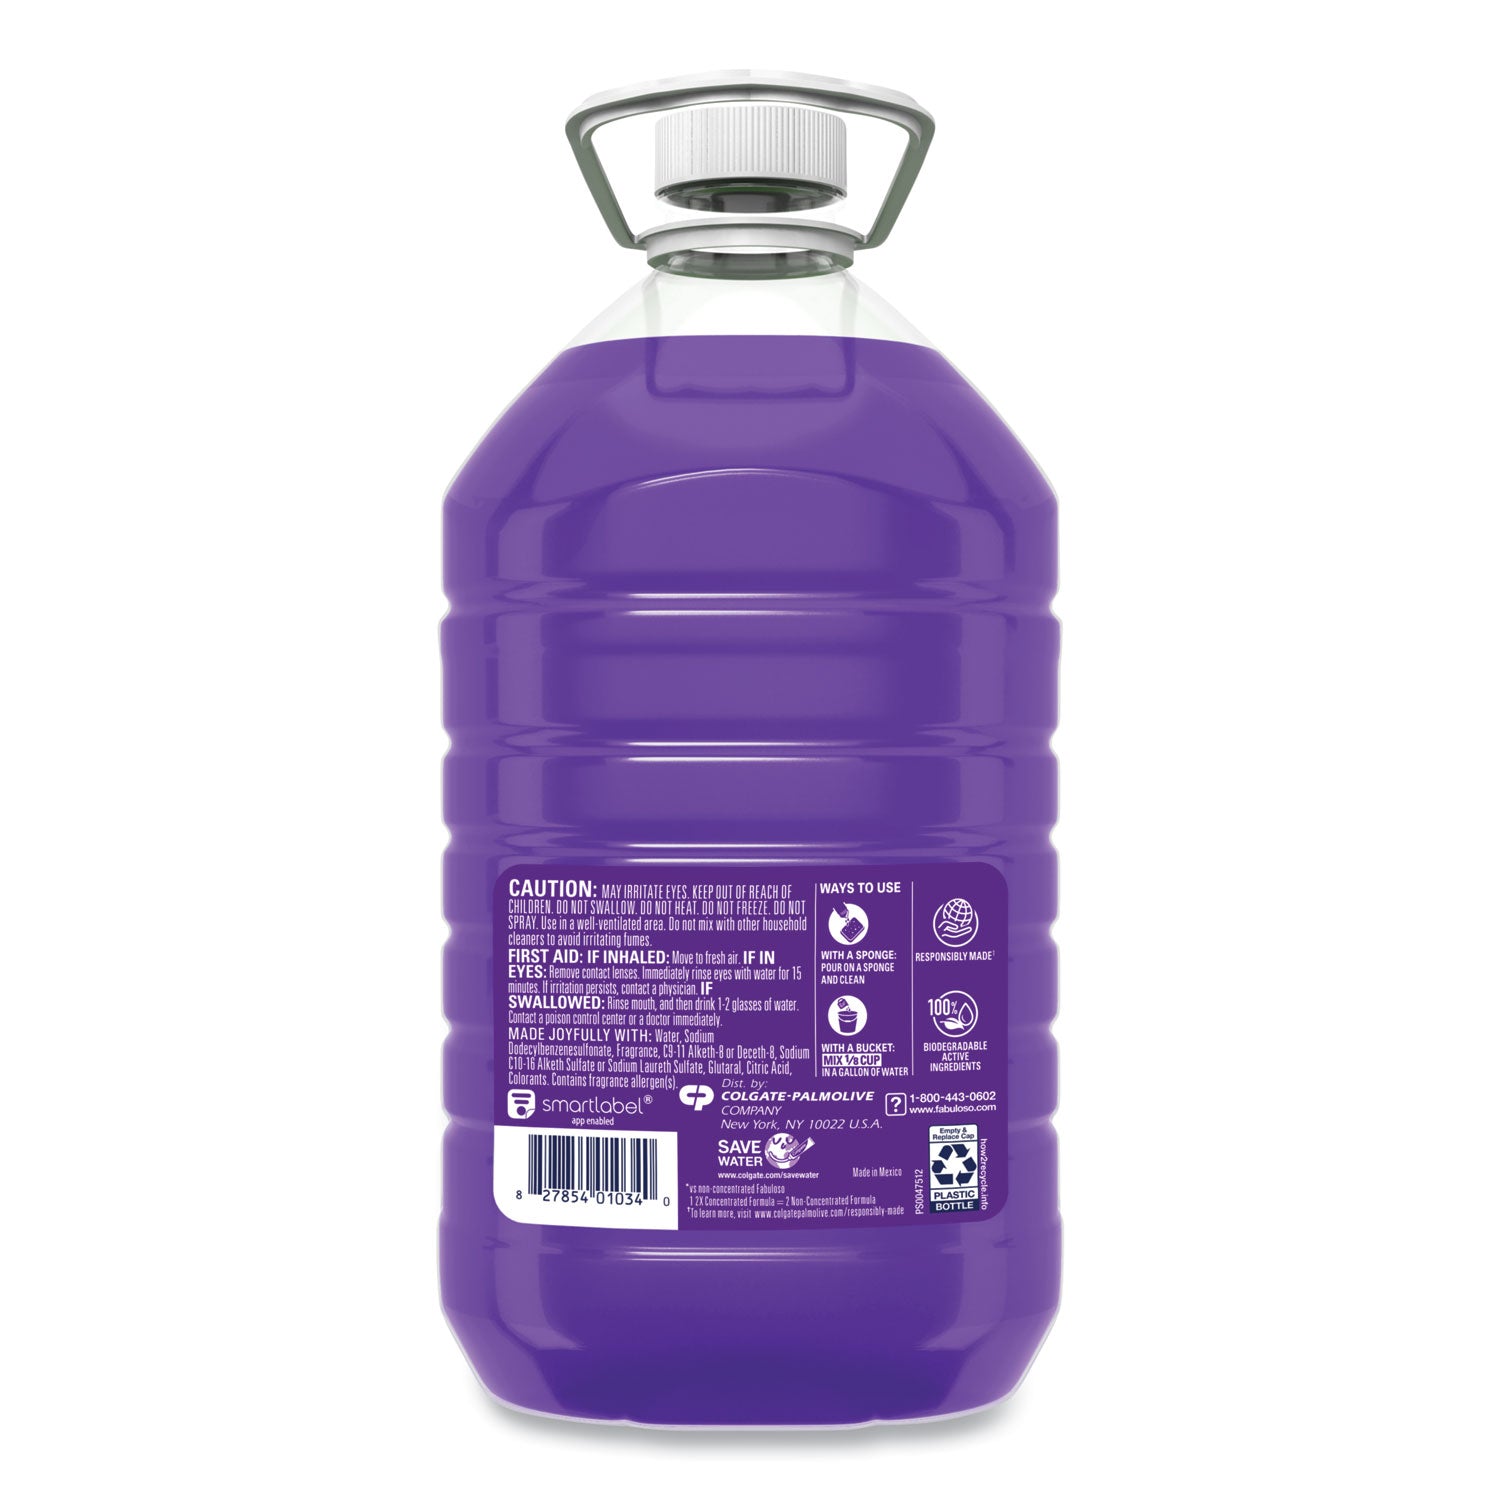 Multi-use Cleaner, Lavender Scent, 169 oz Bottle - 2